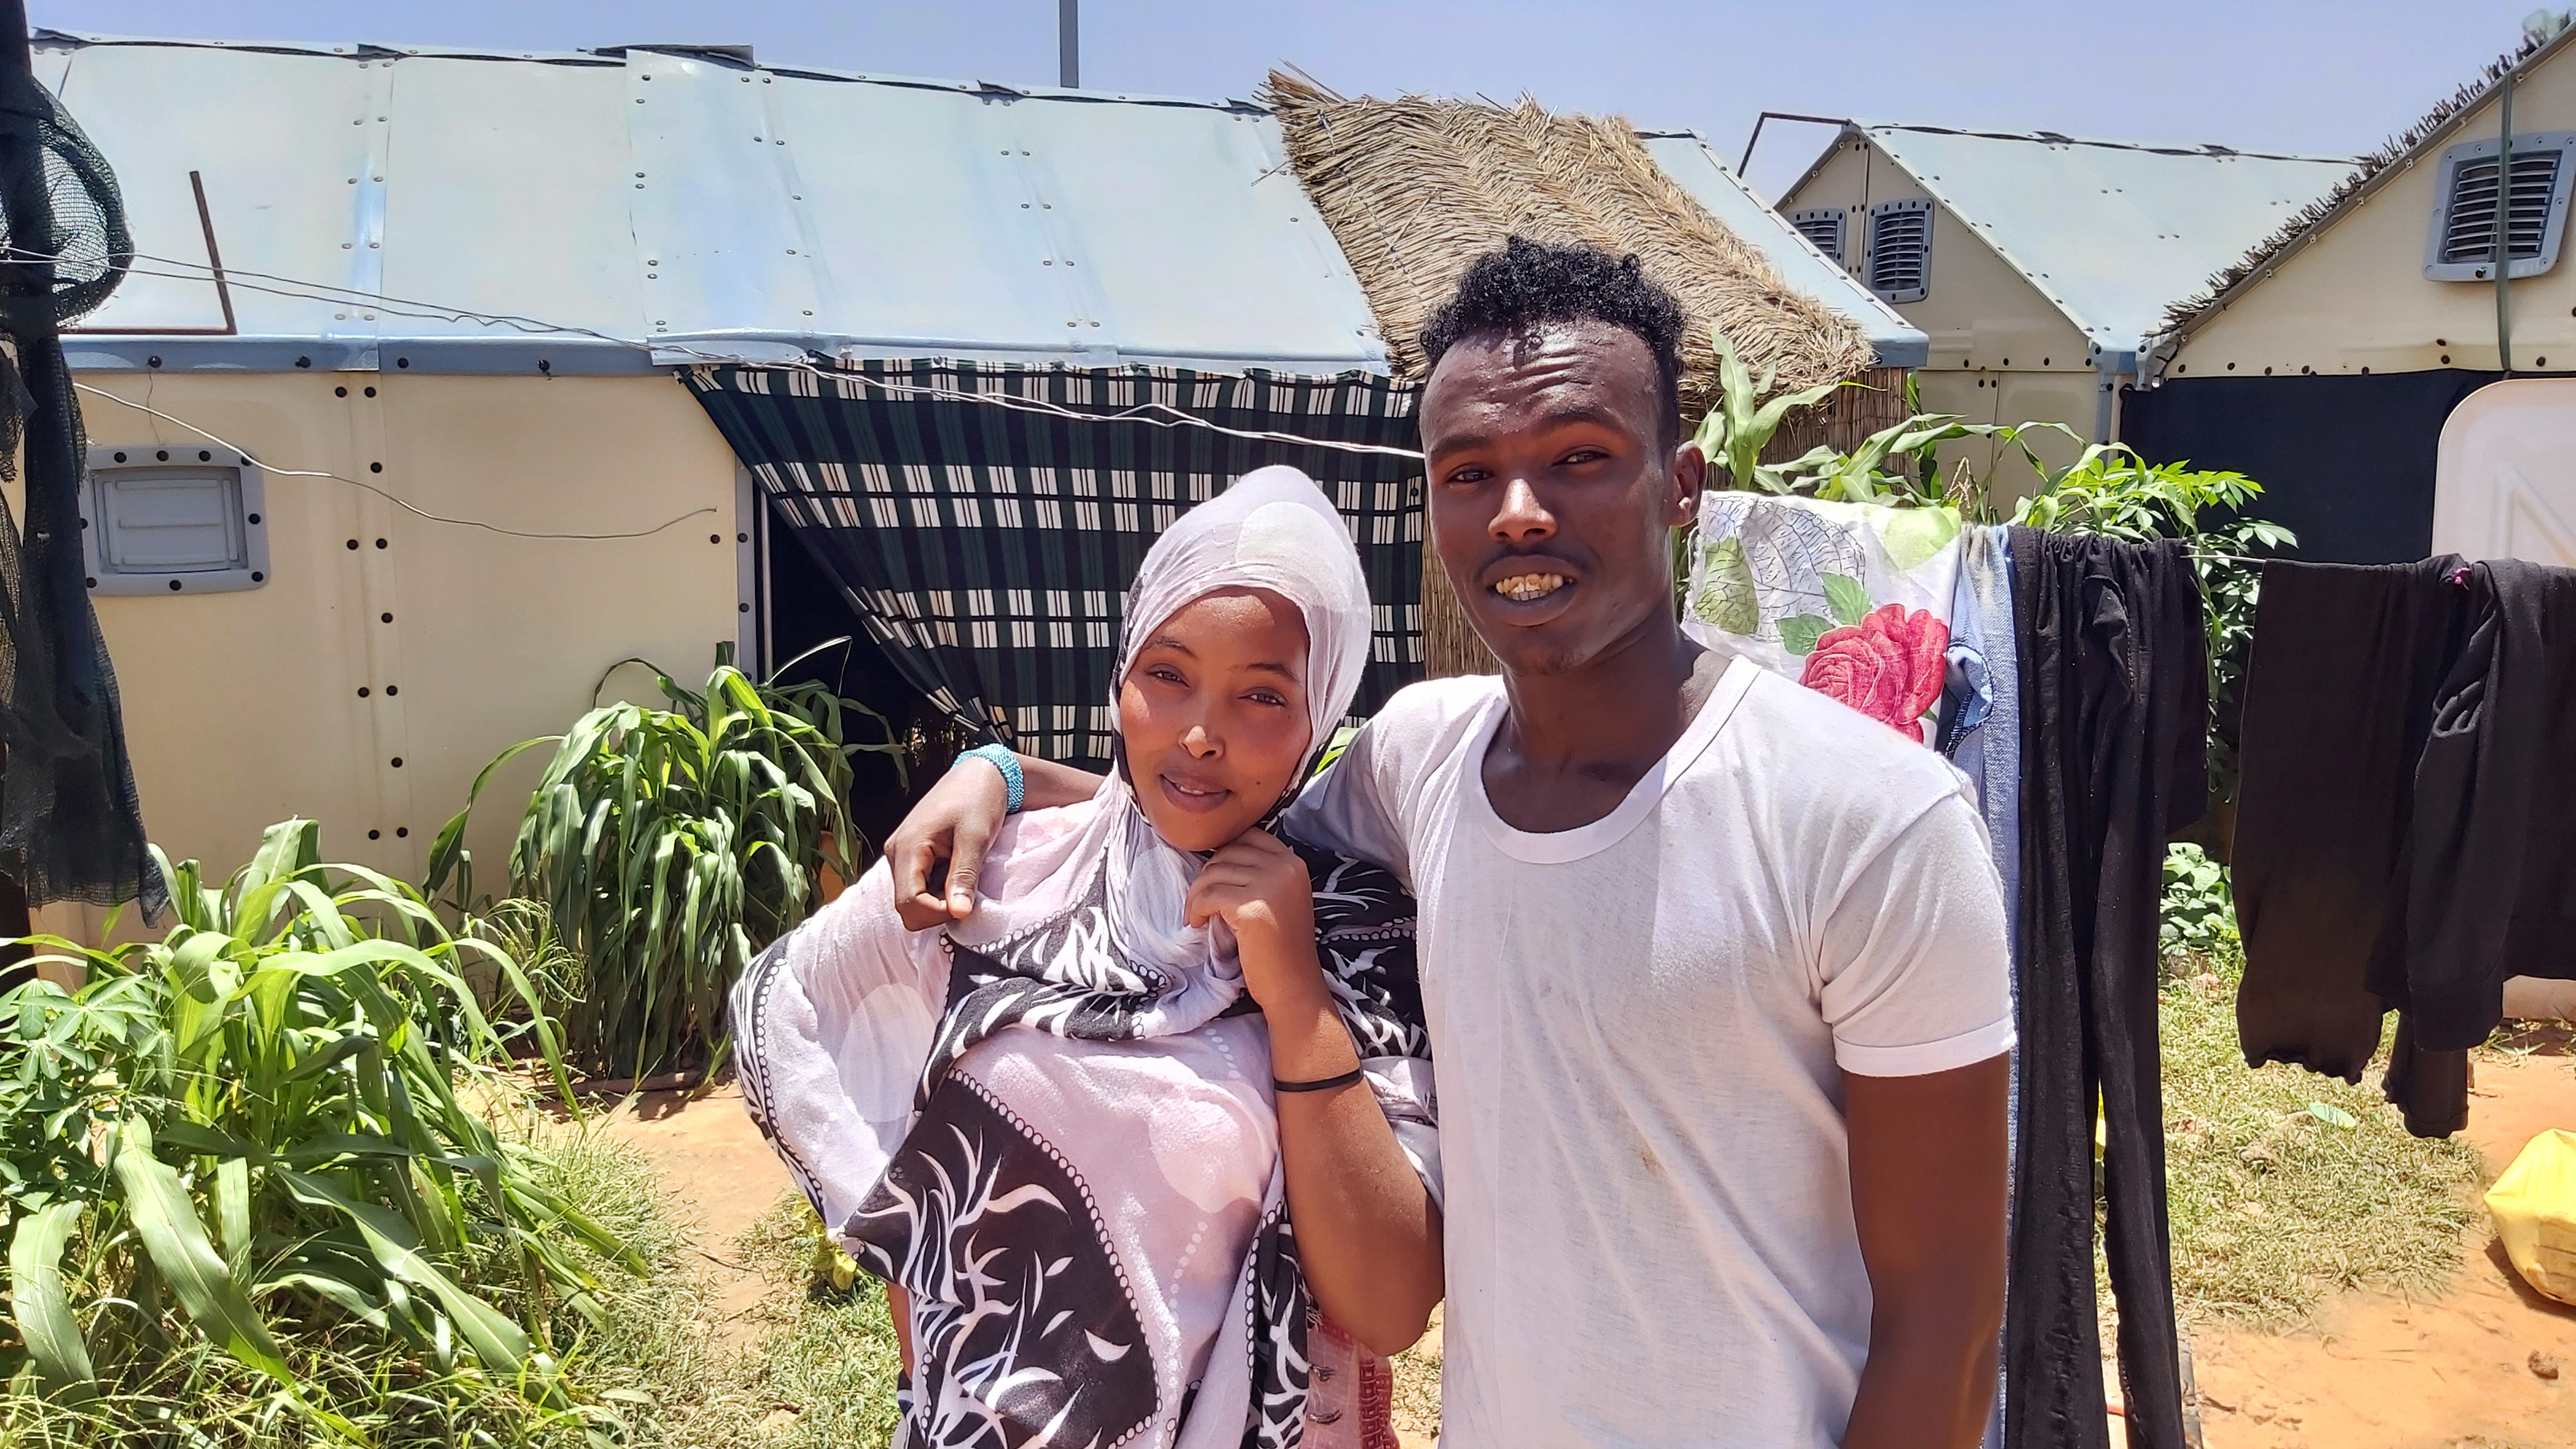 Ubah Mohamed Mamud posa para una fotografía con su marido Mohydin Mohamad Omer fuera de sus dormitorios en el campo de refugiados de Hamdallaye en Níger el 29 de julio de 2020 (ACNUR/Selim Meddeb/ via REUTERS)